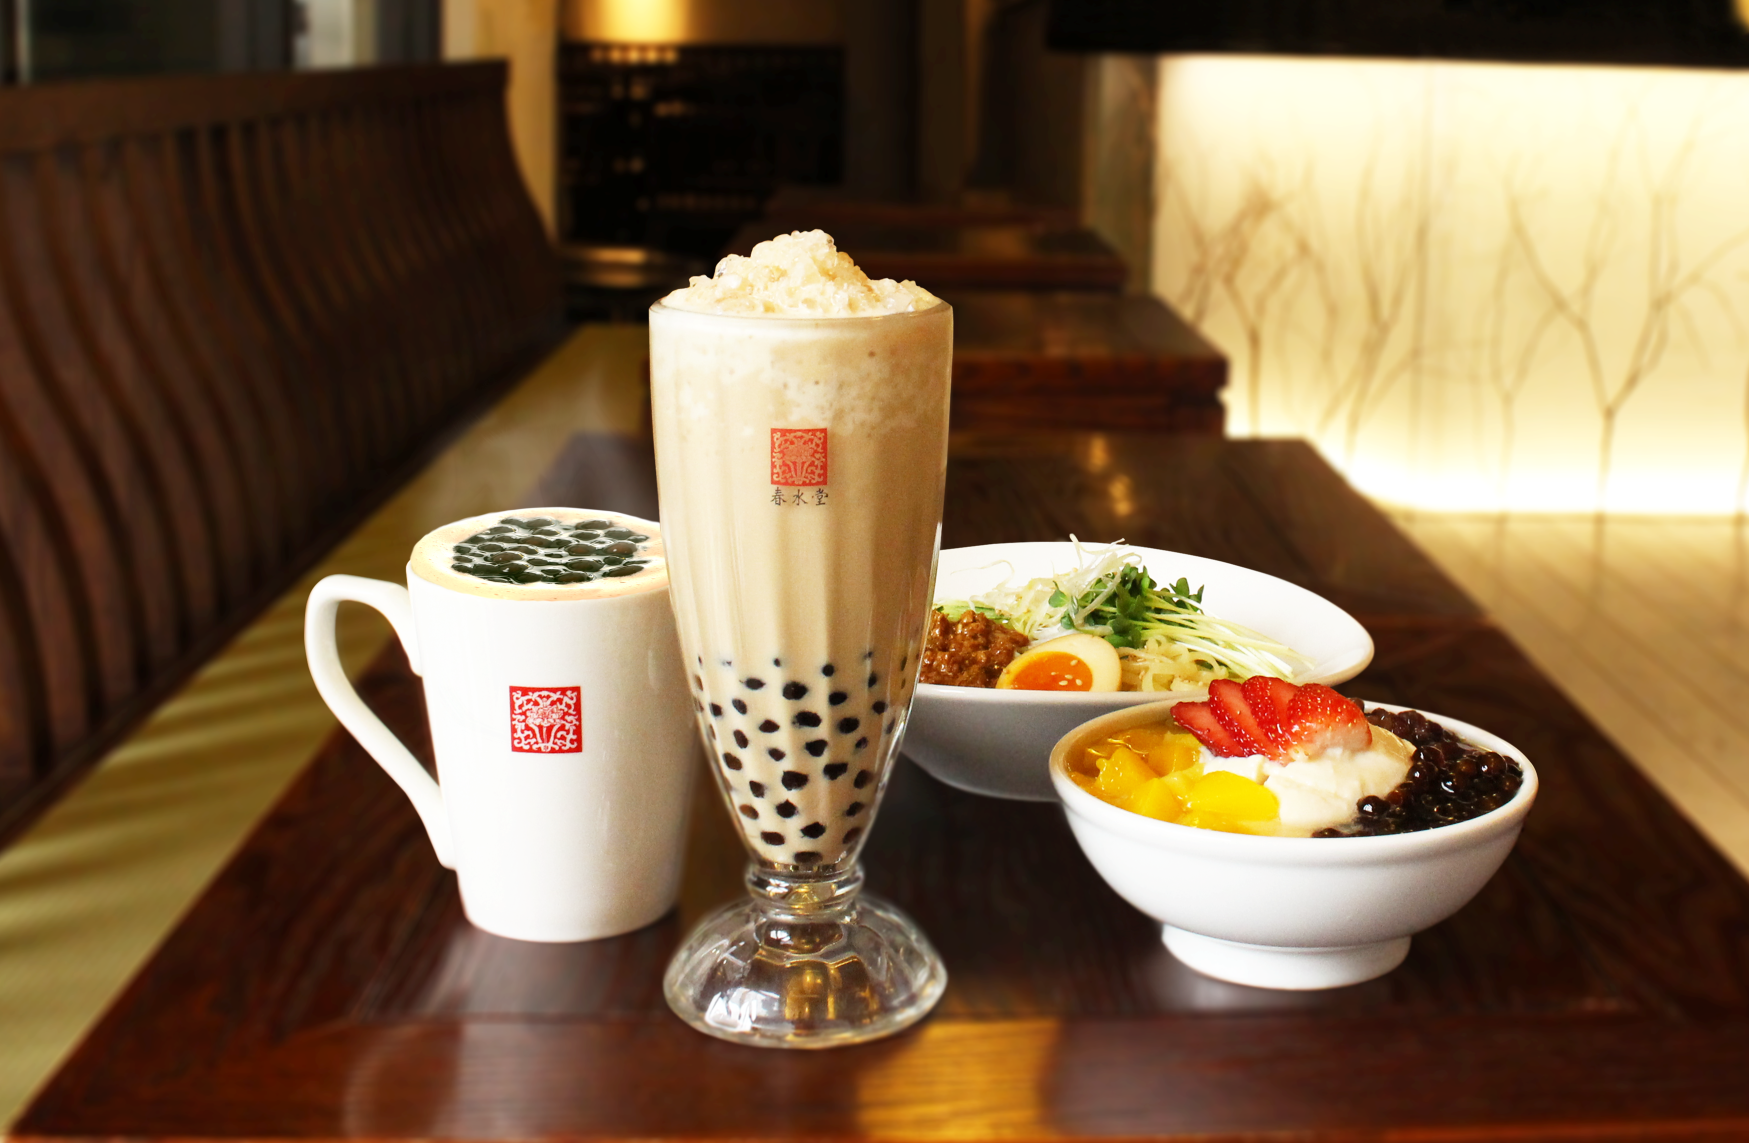 タピオカミルクティー発祥の台湾カフェ「春水堂」 3/31(火)よりUberEatsに豆花やヌードルセットなどの新メニュー追加